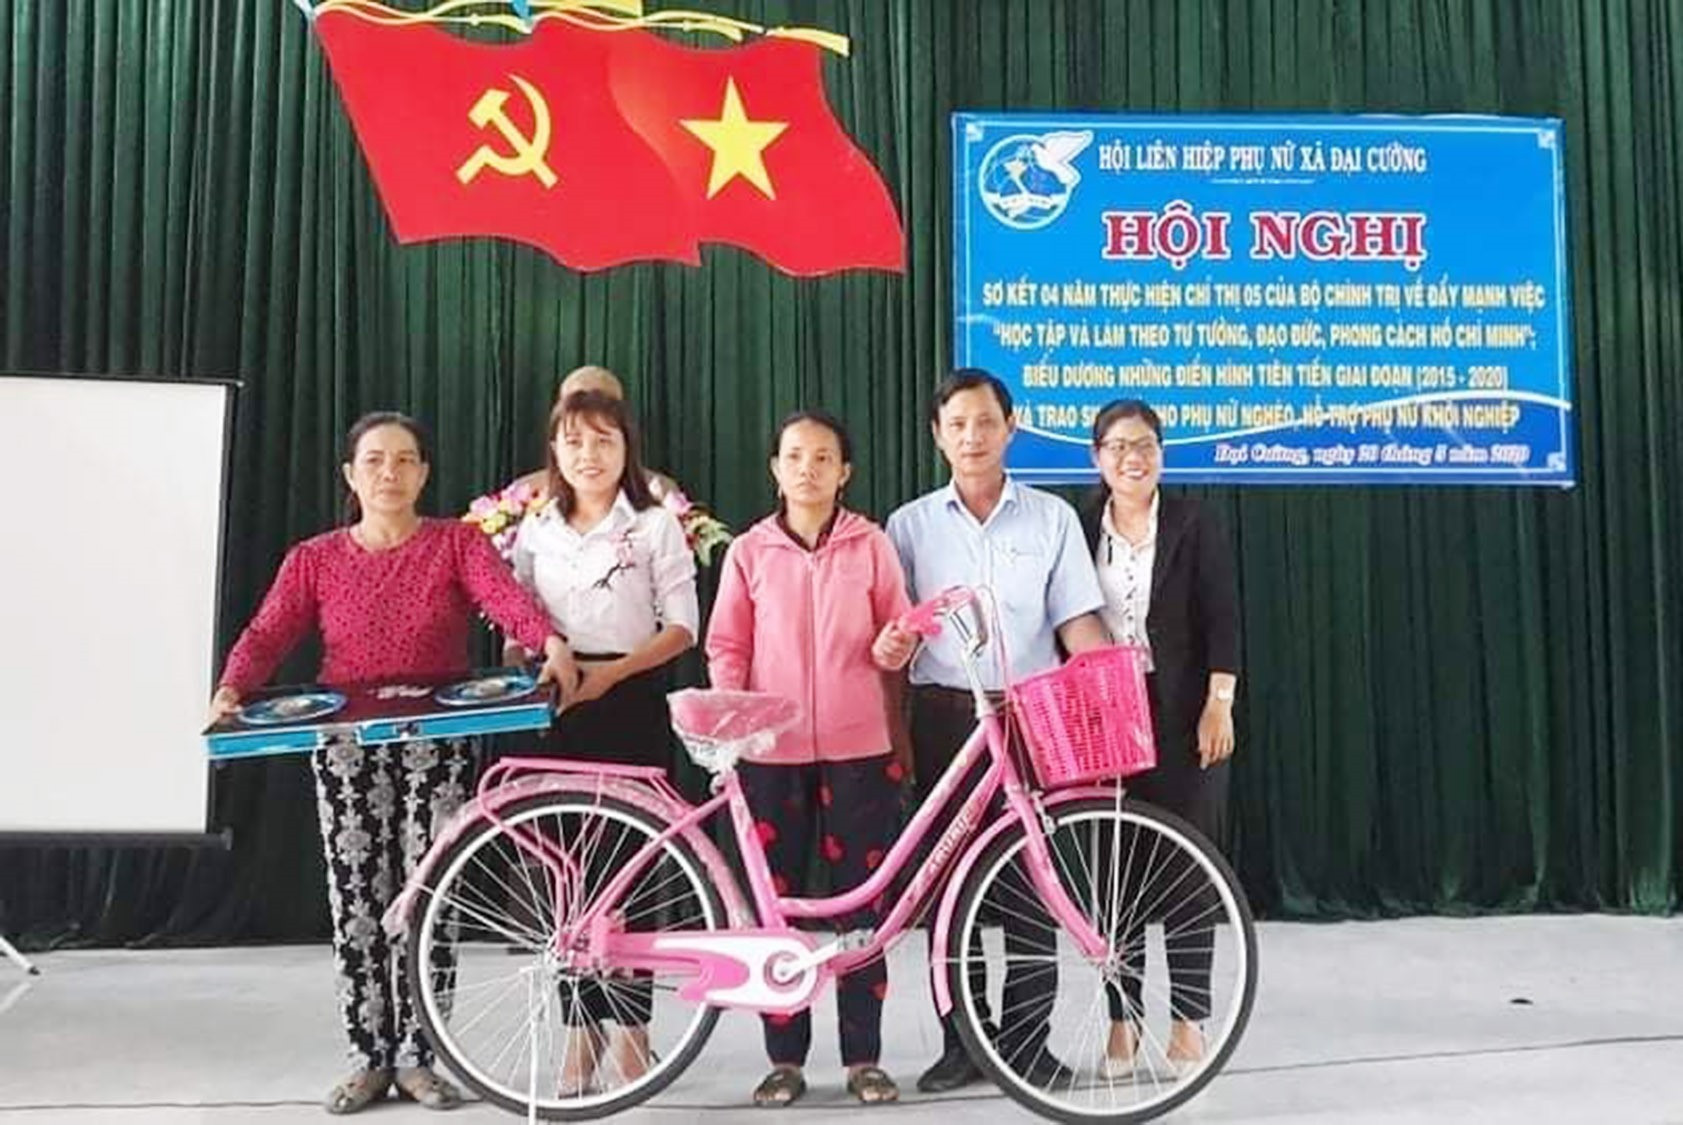 Chị Đoàn Thị Kim Lực (thứ 2 từ trái qua) trao xe đạp tặng học sinh nghèo xã Đại Cường (Đại Lộc). Ảnh: LÊ TÂY